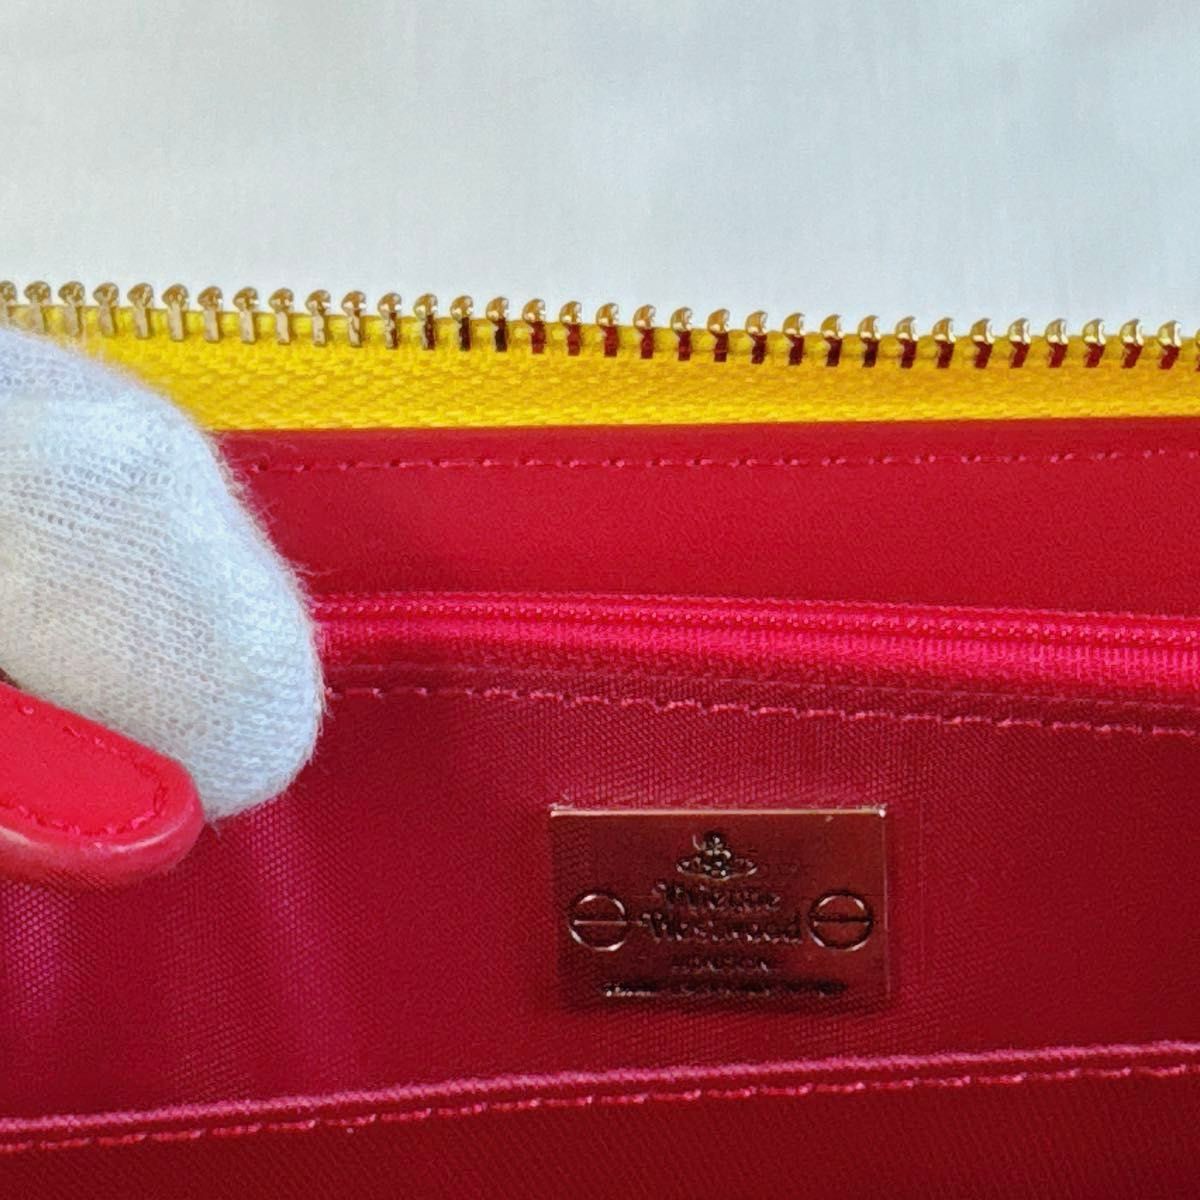 ☆新品☆Vivienne Westwood 55VV355 エナメル 赤 レッド 長財布 ウォレット 財布